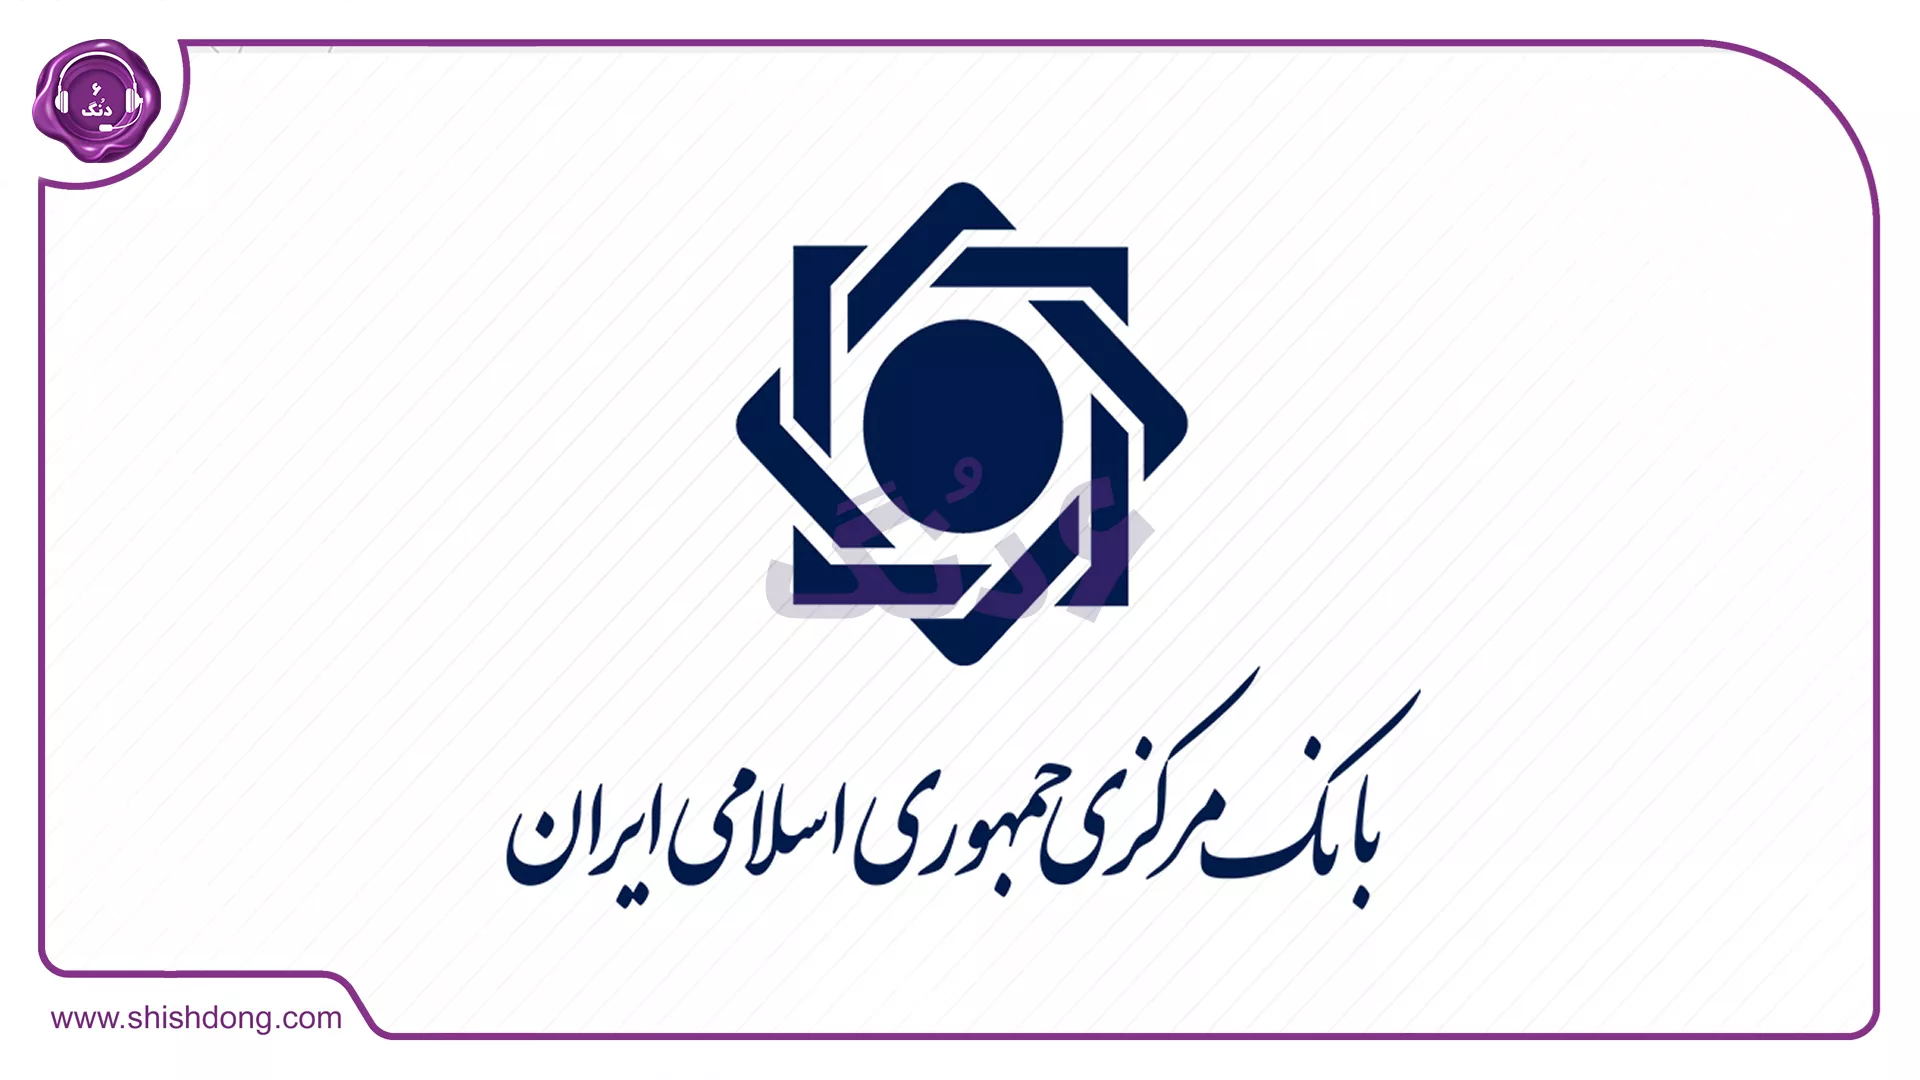 بانک مرکزی چجچکهوری اسلامی ایران